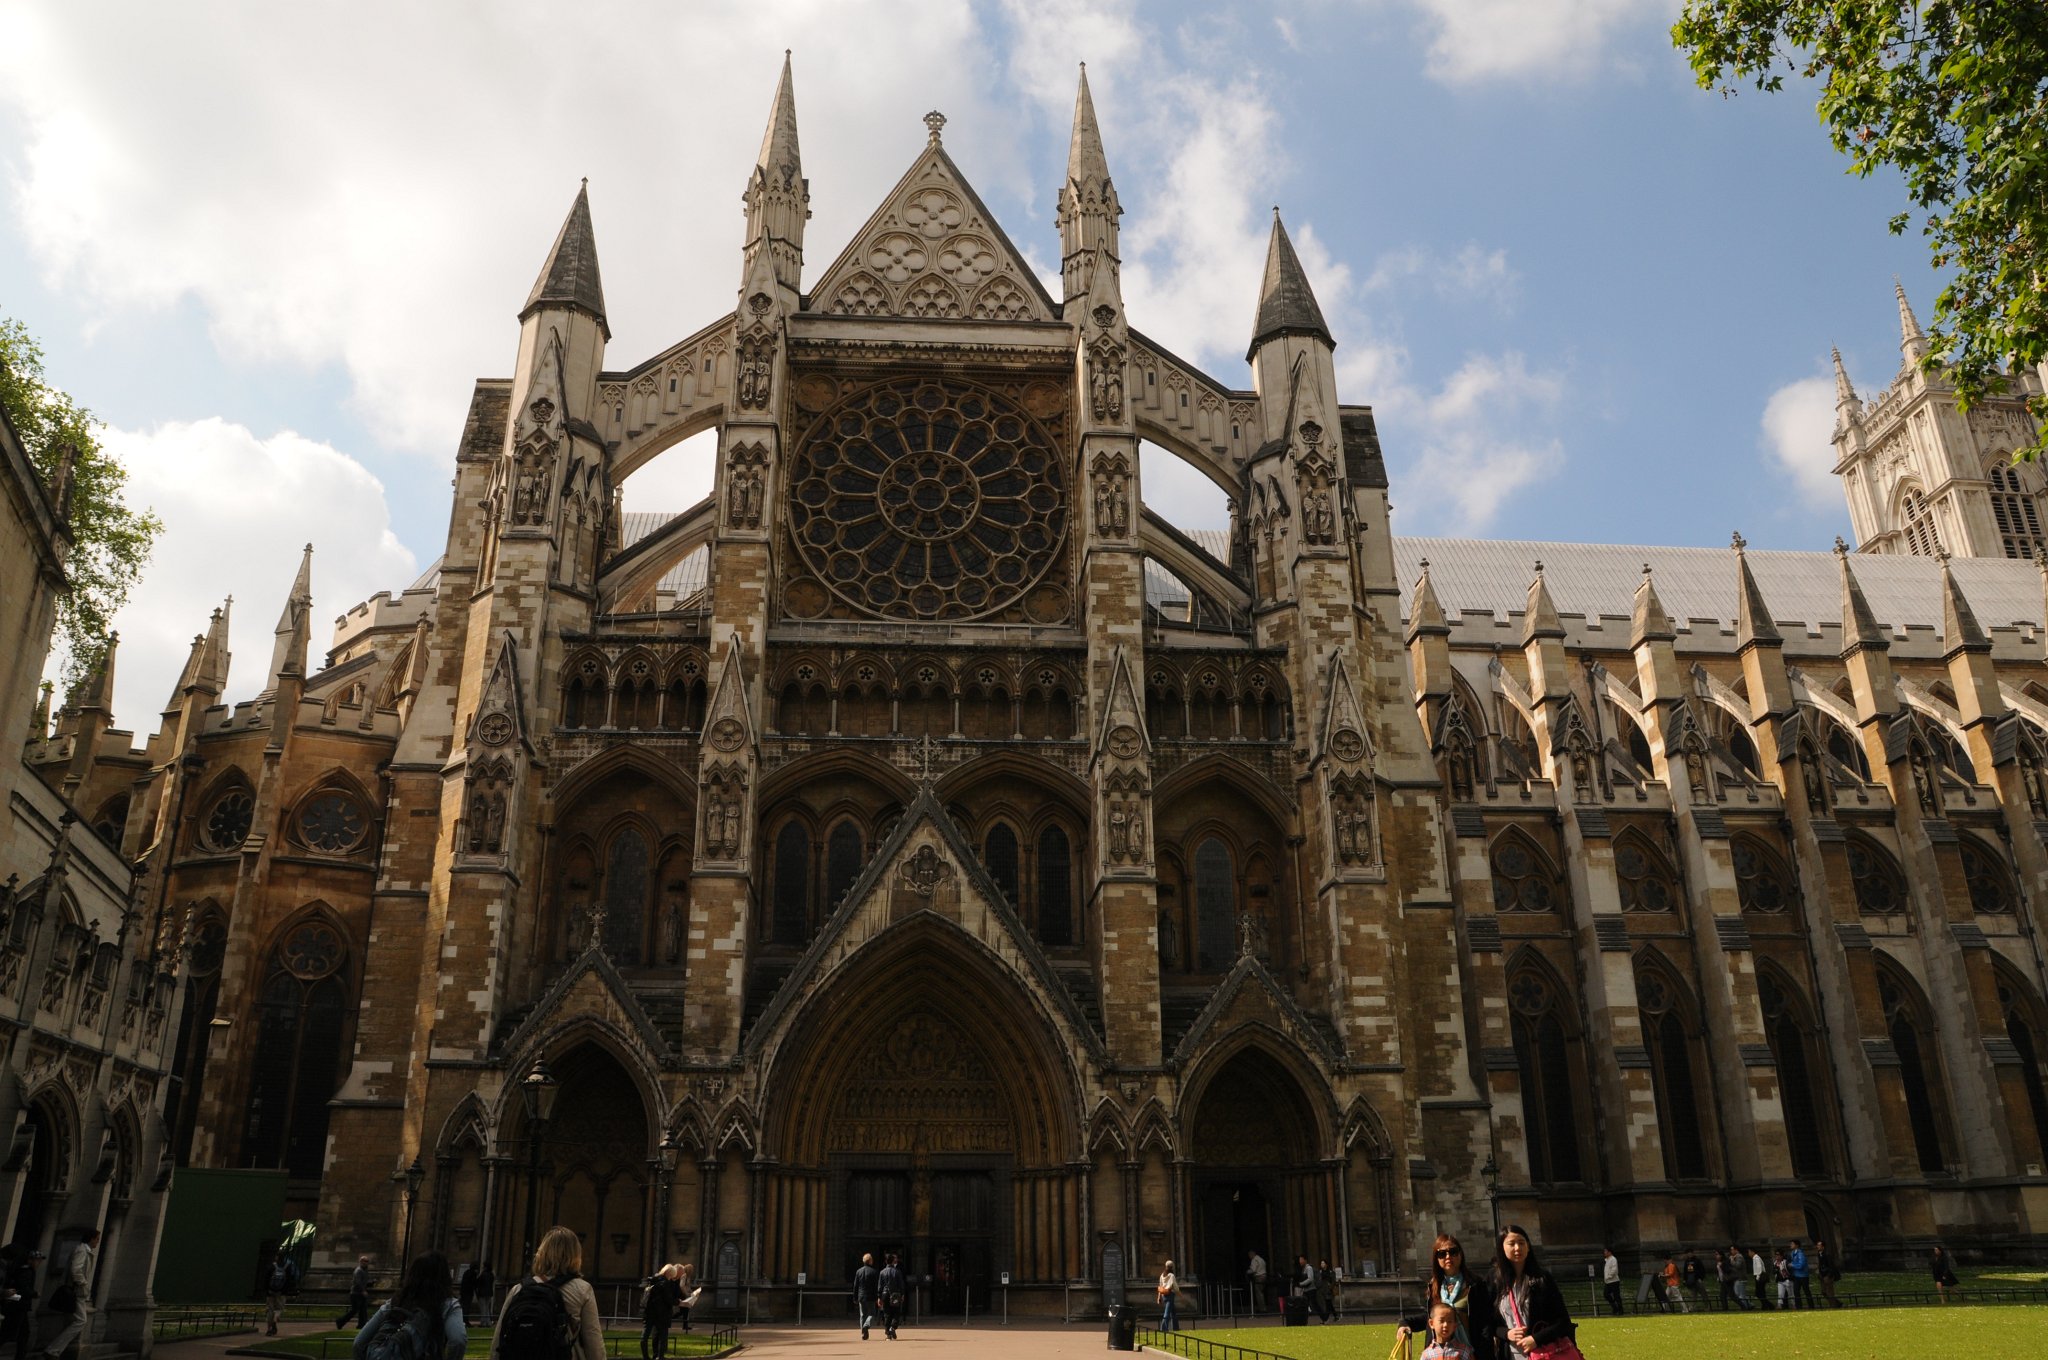 DSC_3754.JPG - Westminsterské opatství (Westminster Abbey) – oficiální označení Kolegiátní chrám svatého Petra ve Westminsteru (The Collegiate Church of St Peter, Westminster) je chrám ve stavebním tvaru katedrály, postavený převážně v gotickém slohu, nacházející se v Londýnském obvodu Westminster, nedaleko od Westminsterského paláce. Je tradičním místem korunovací, svateb a místem posledního odpočinku anglických panovníků.